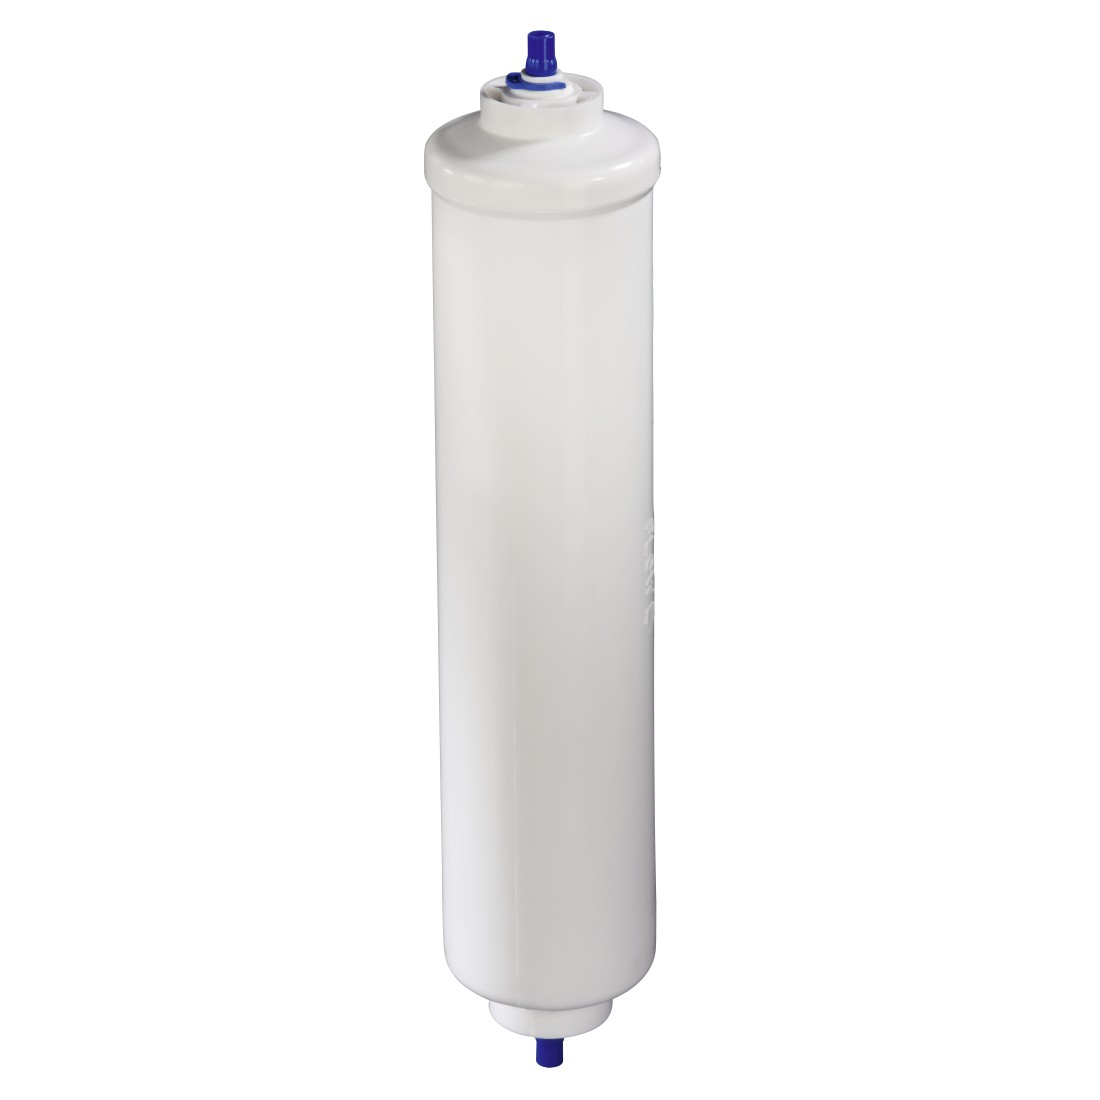 Universal-Wasserfilter für Externer Side-by-Side-Kühlschränke